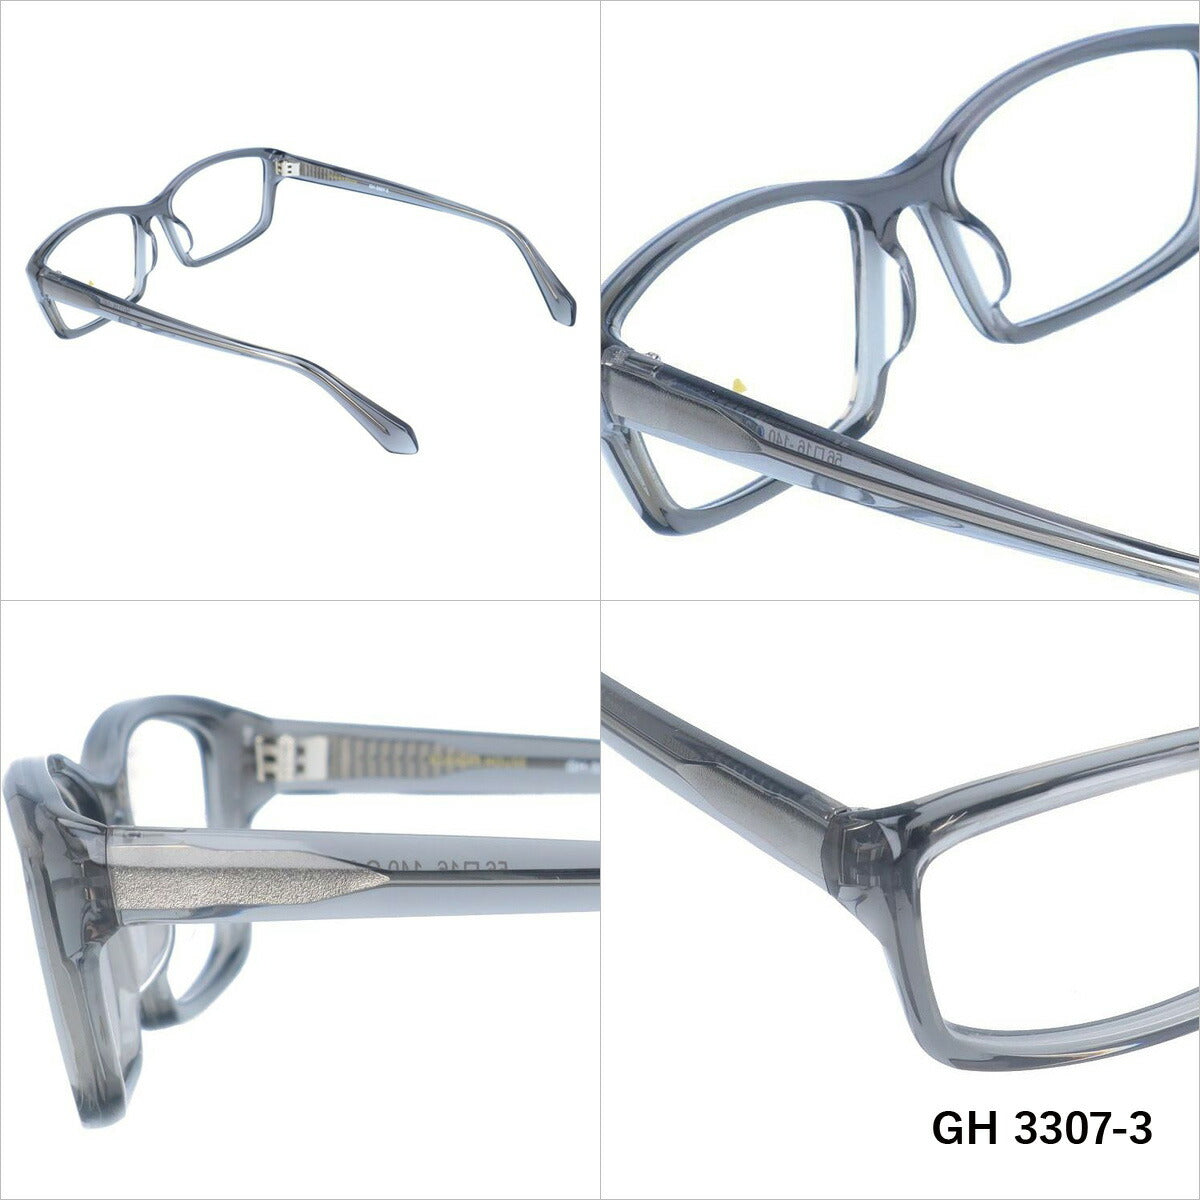 グラスハウス メガネ 眼鏡 フレーム 度付き 伊達 カラーレンズ メンズ レディース ブランド GH 3307 56 スクエア | 老眼鏡 PCレンズ ブルーライトカット 遠近両用 対応可能 紫外線 対策 おすすめ 人気 プレゼント